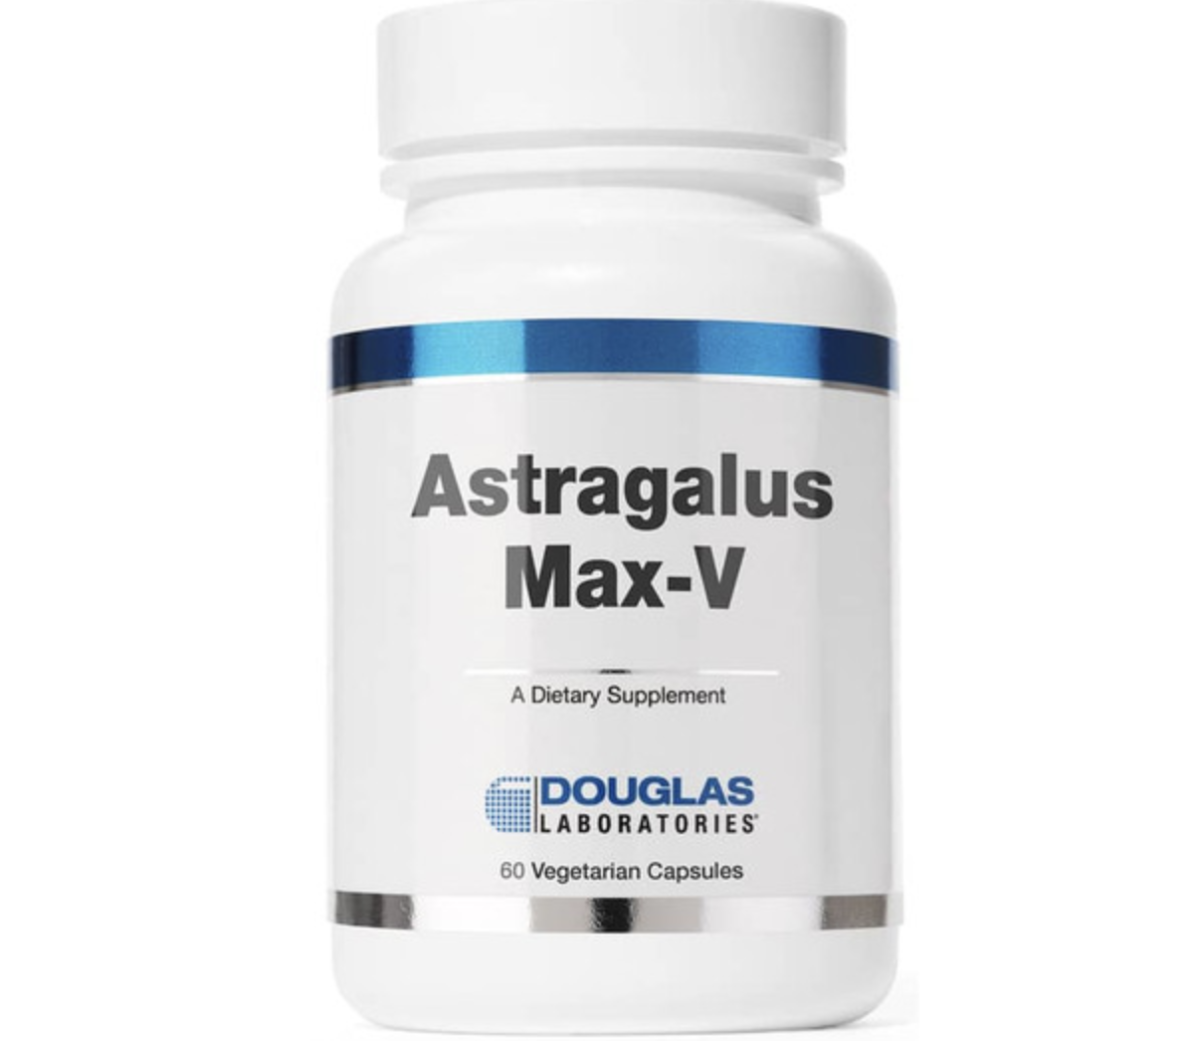 Astragalus Max V label